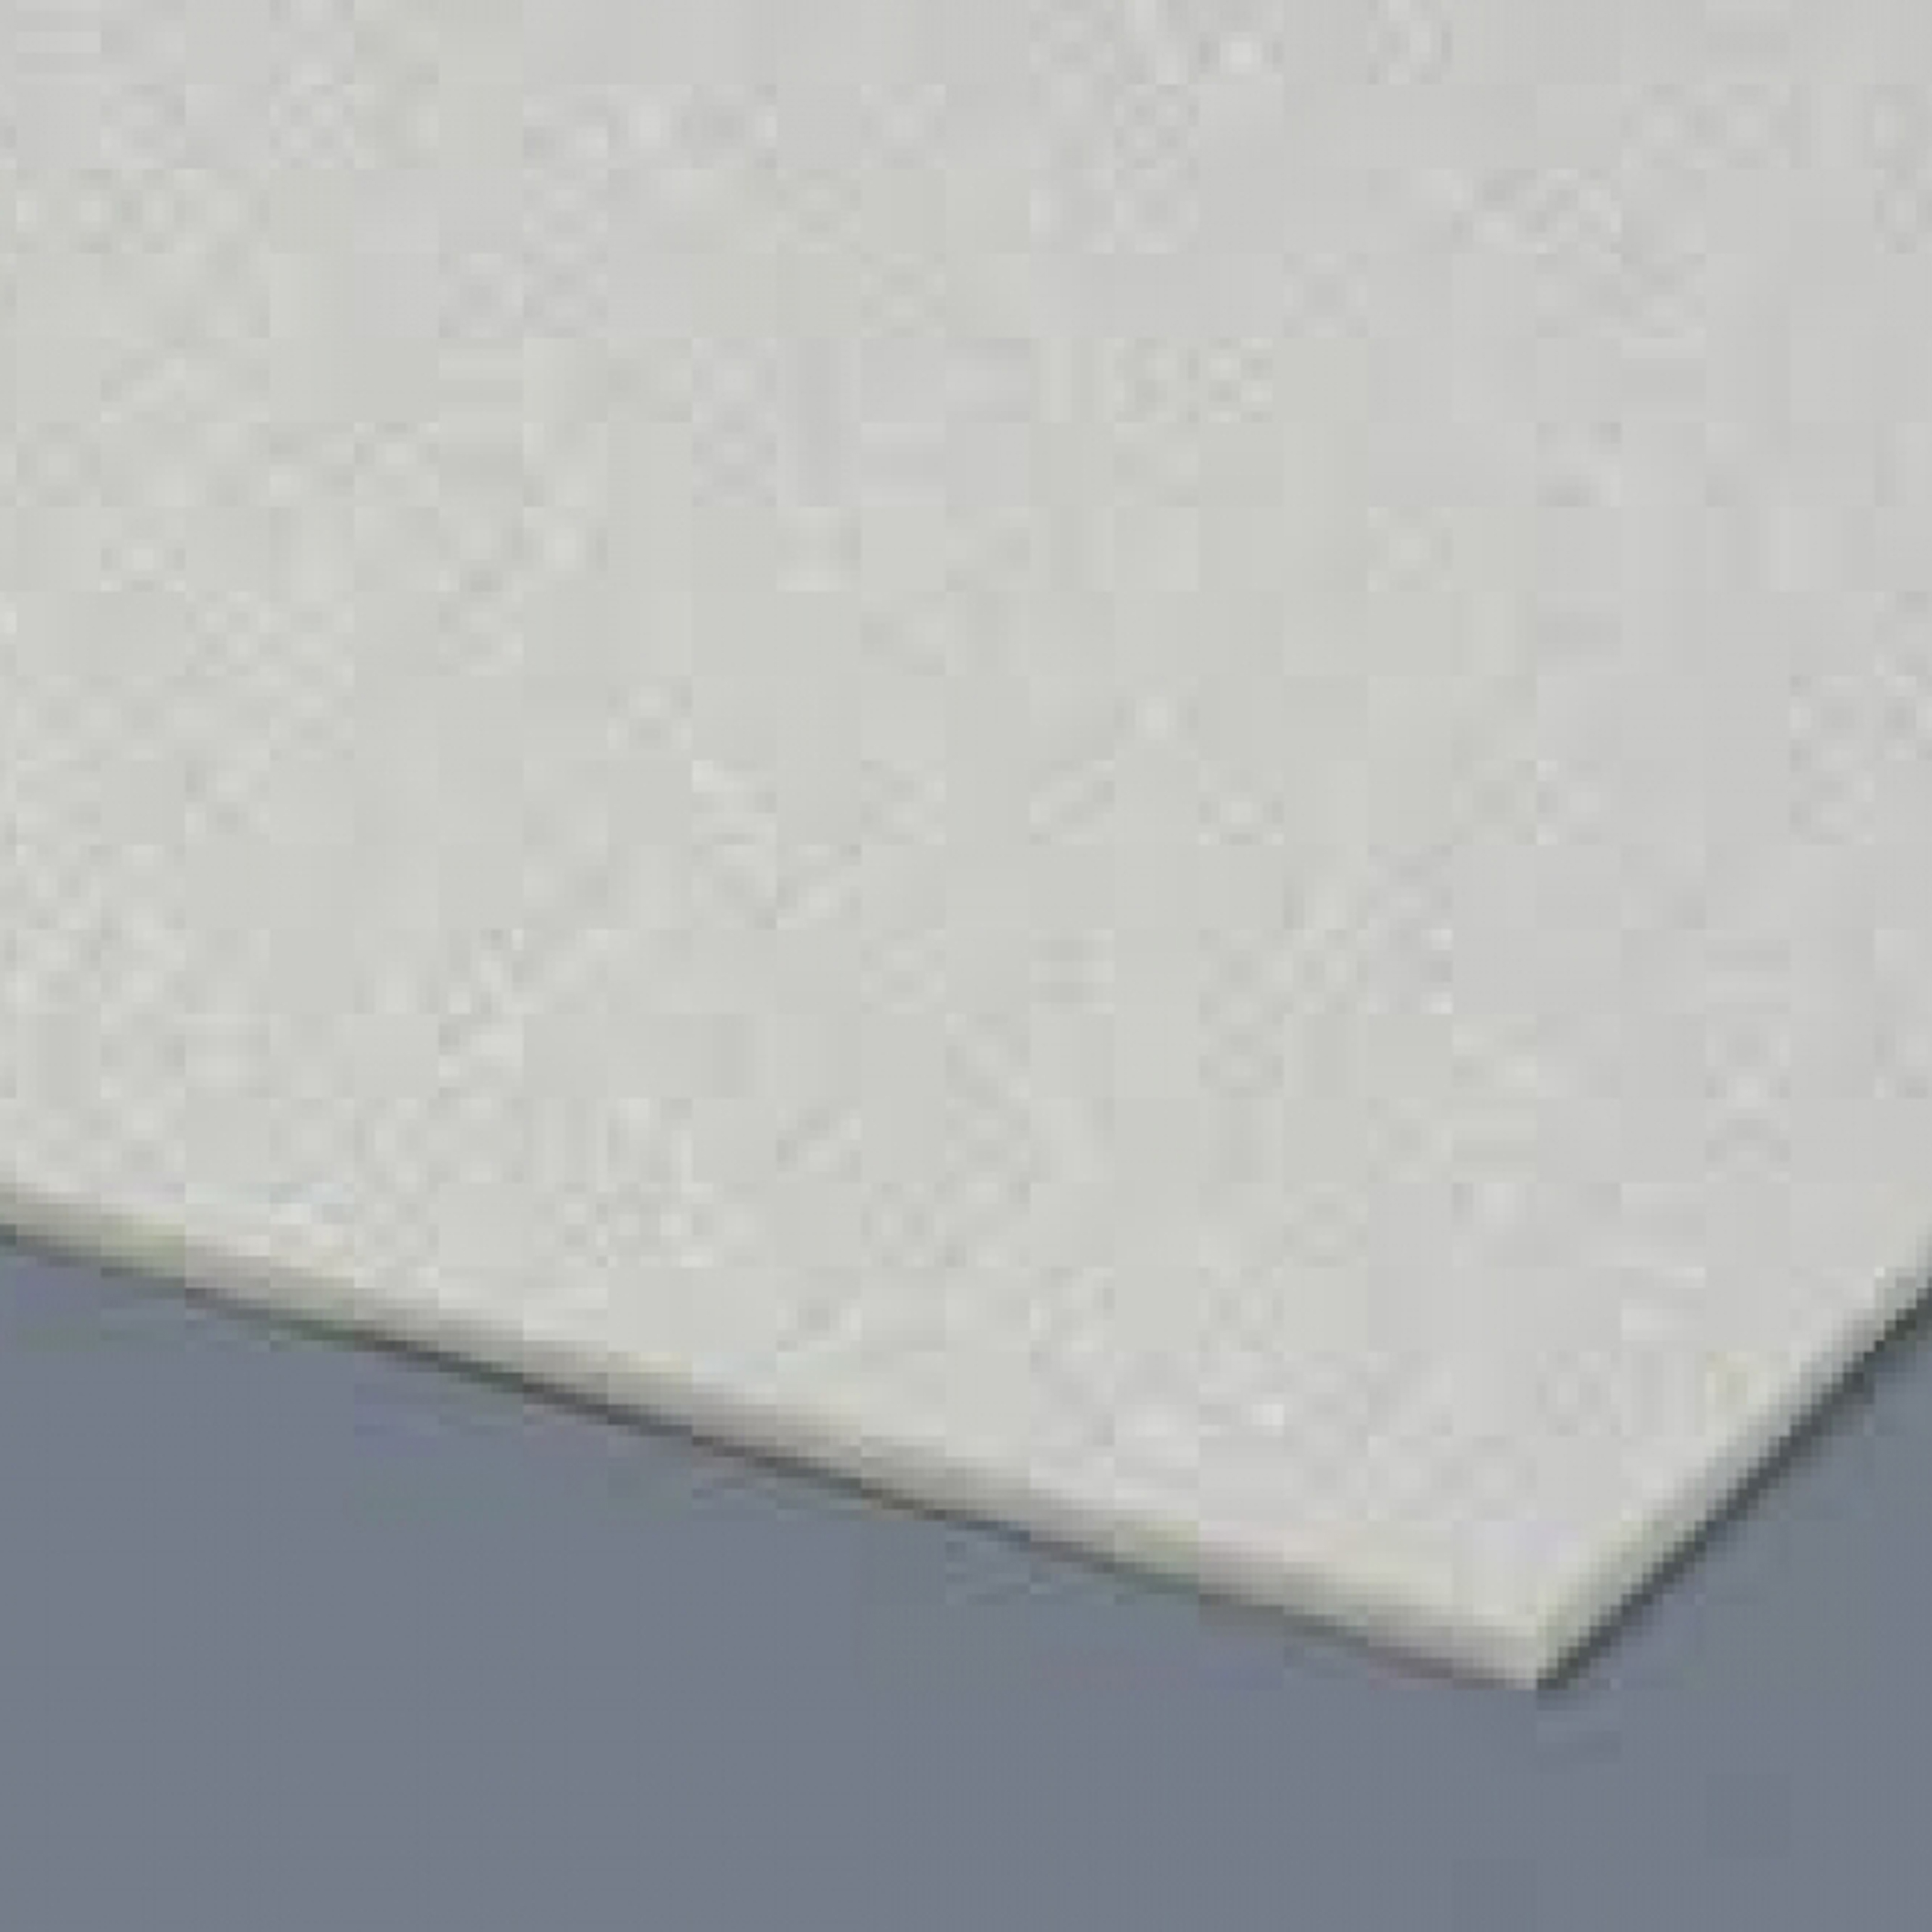 Antirutsch Teppichunterlage Teppich Antirutschmatte Wasser aufnehmen  Bodenmatte Teppiche, Aatrx, (1-St)